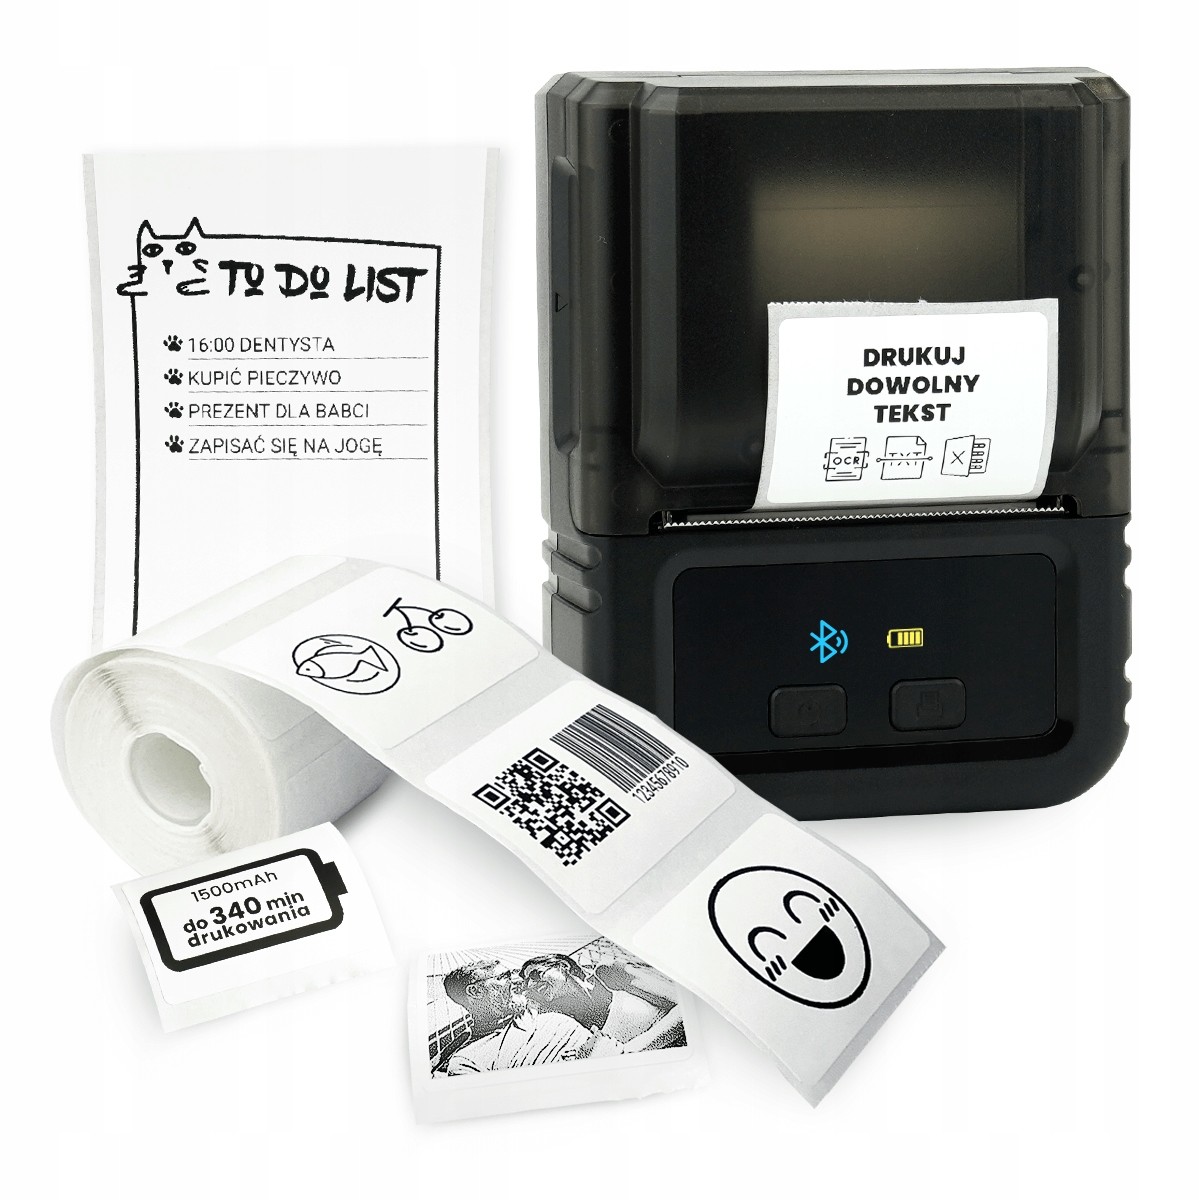 Phomemo M120 mini termální tiskárna samolepících štítků Bt